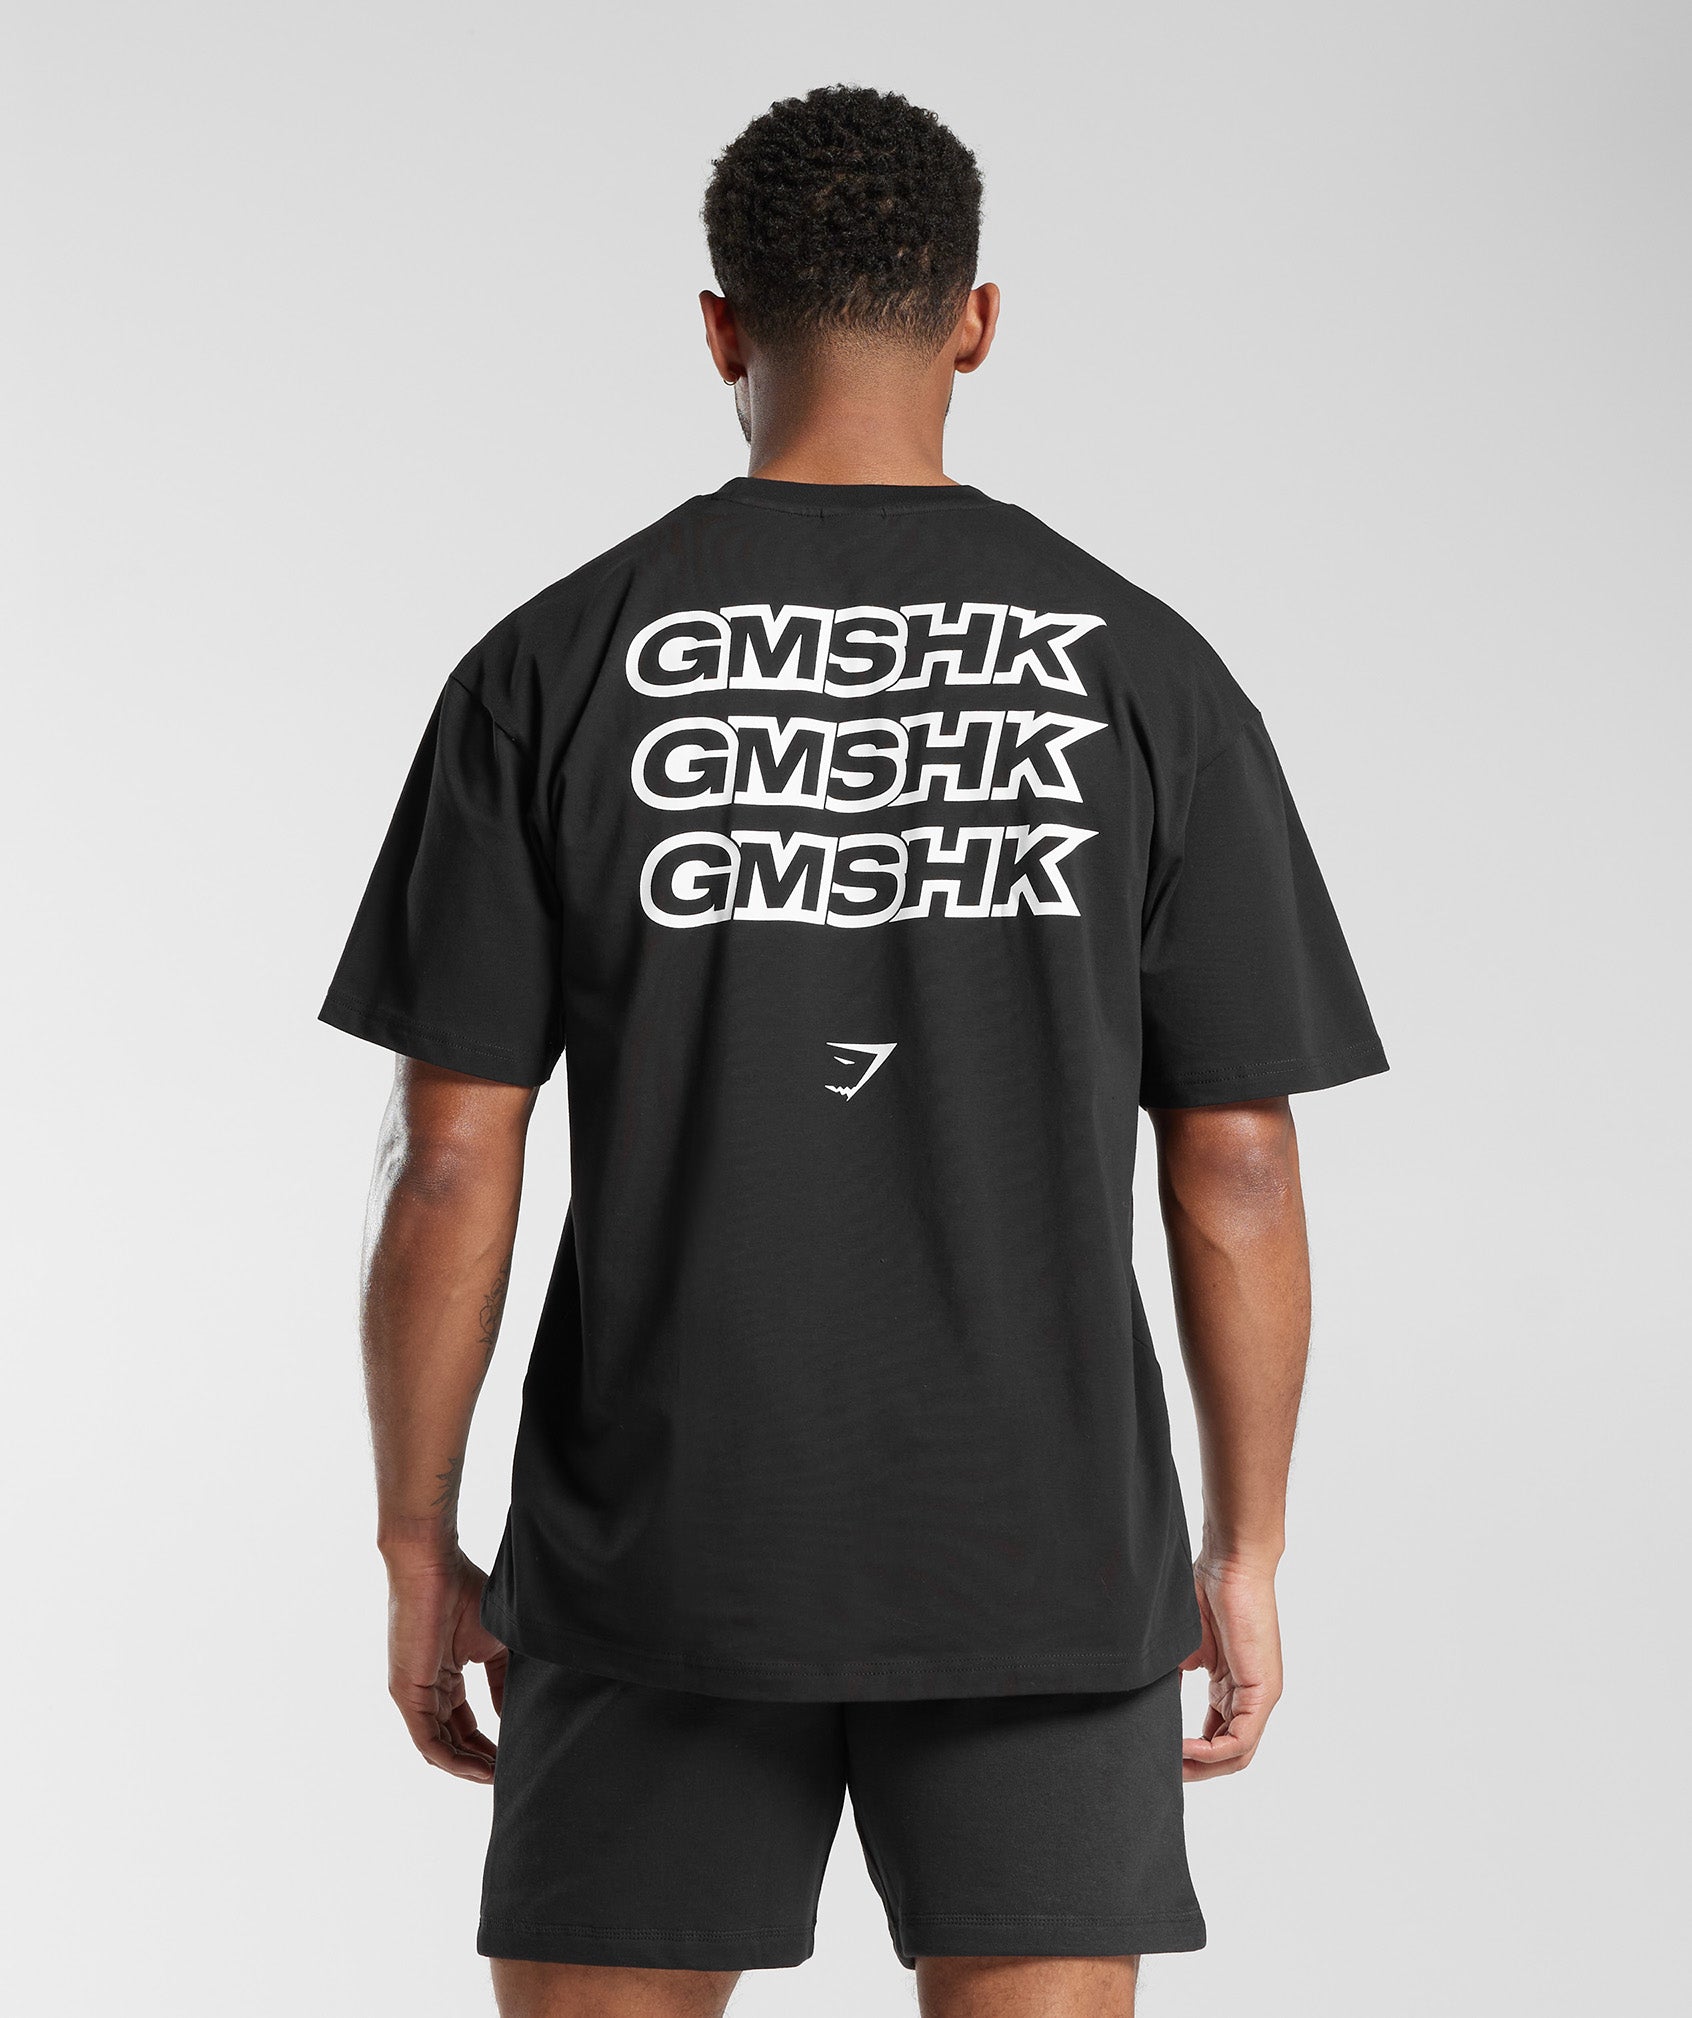 GMSHK Oversized T-Shirt in Black - view 1